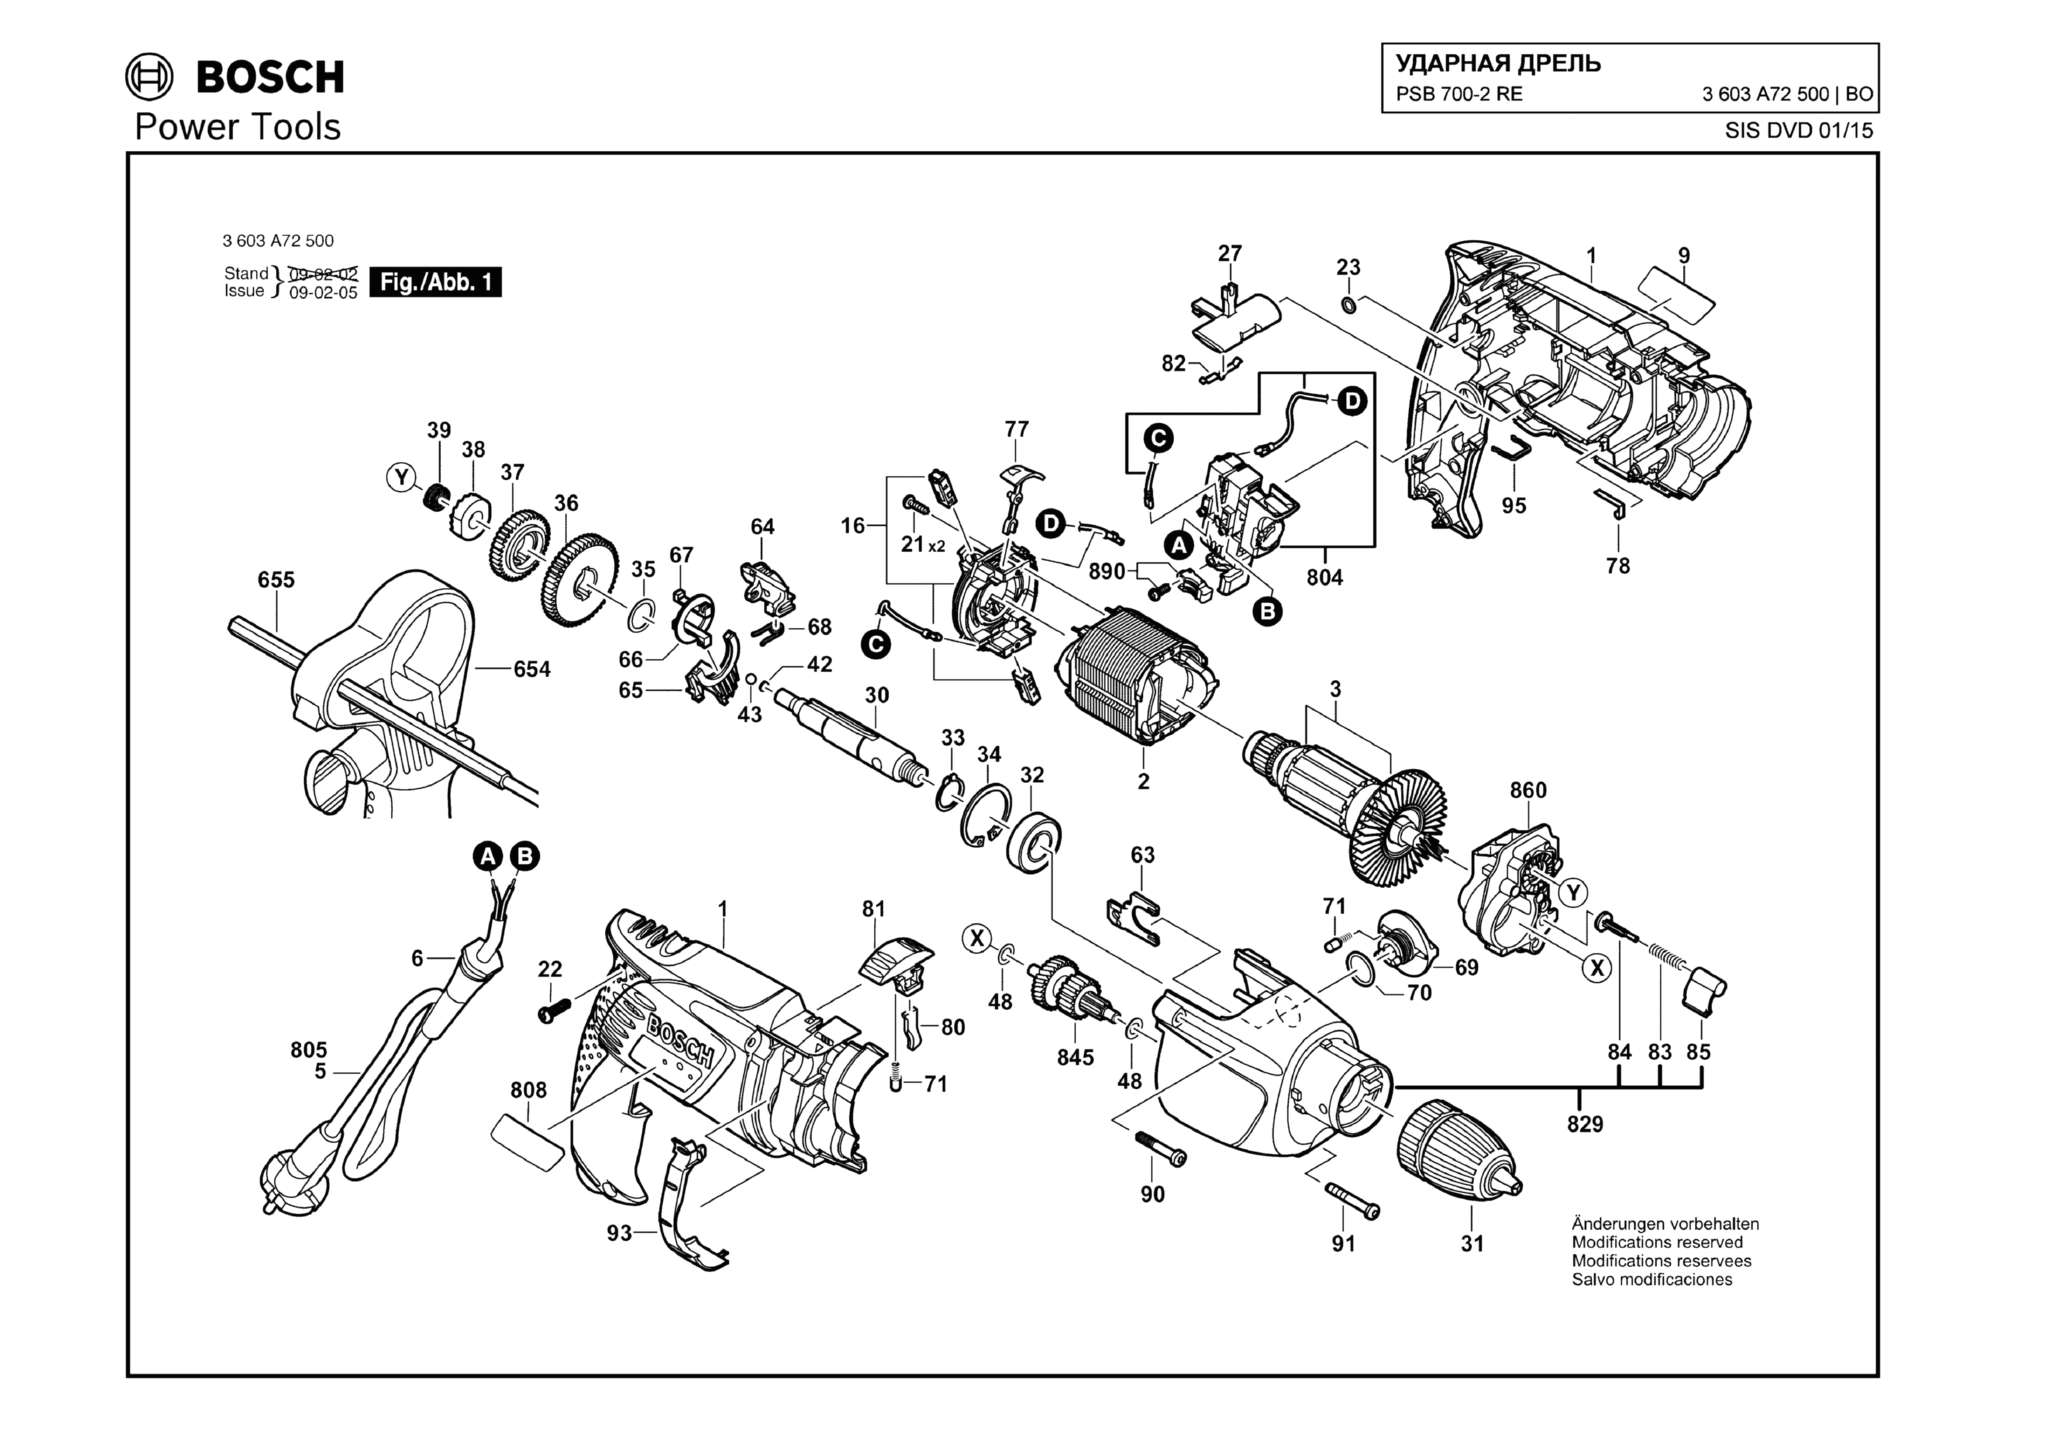 Запчасти, схема и деталировка Bosch PSB 700-2 RE (ТИП 3603A72500)